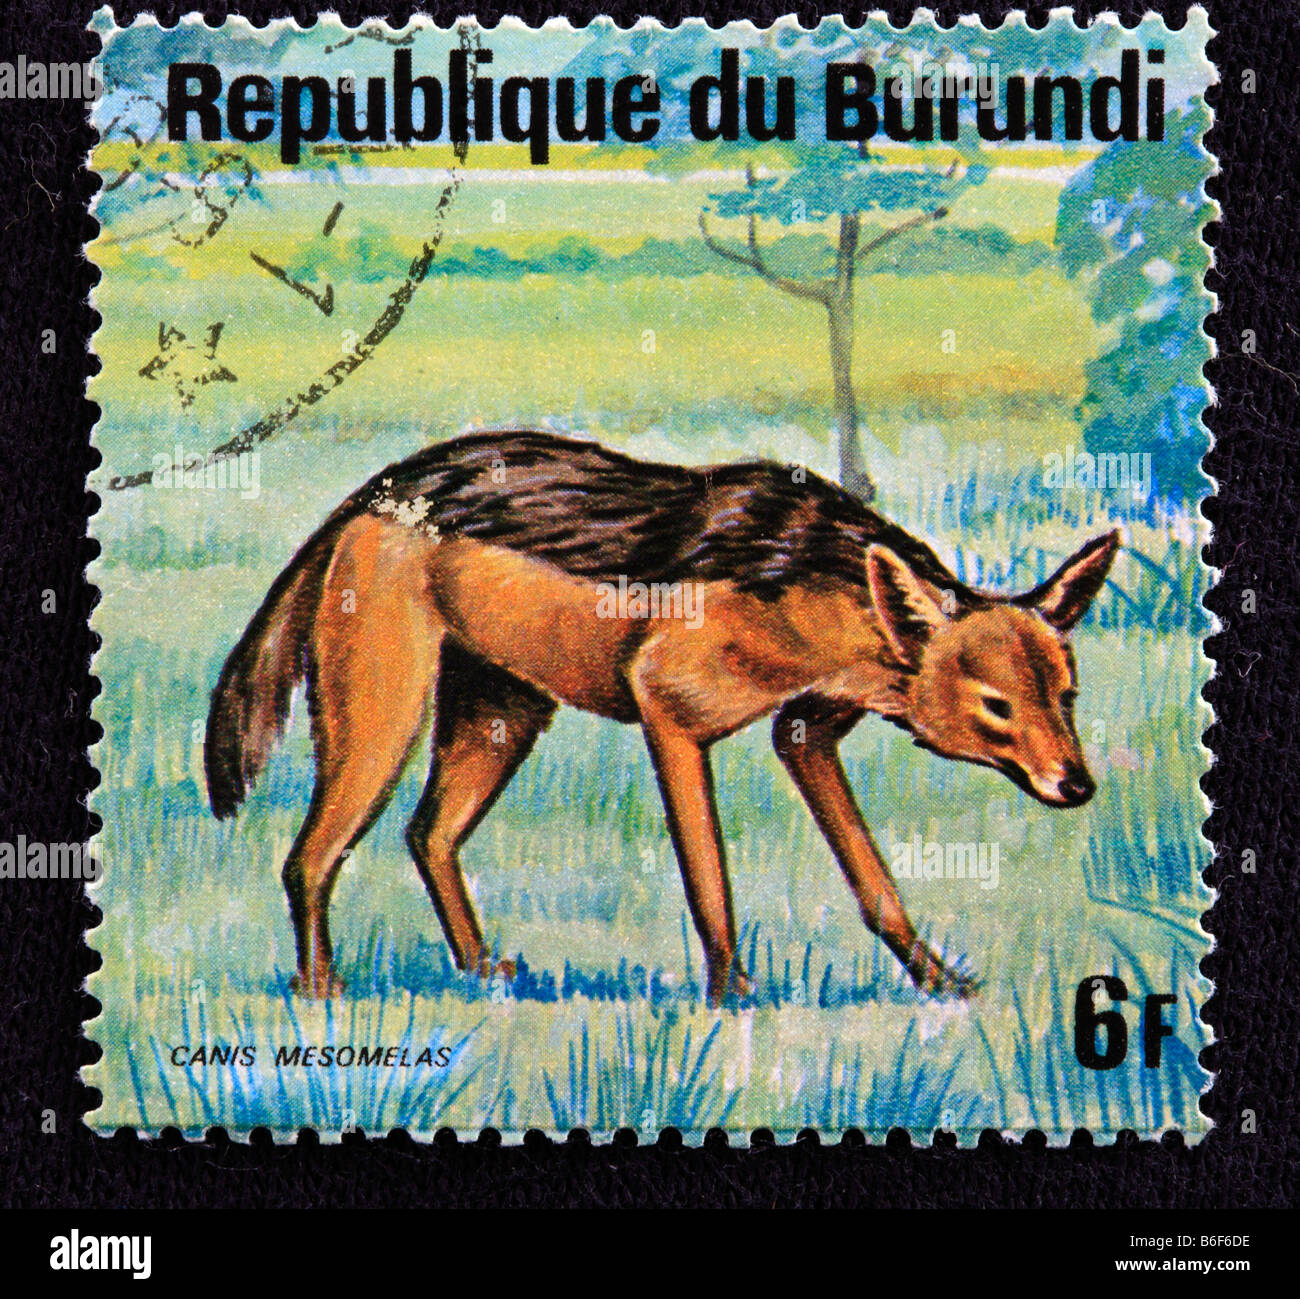 Black backed jackal (Canis mesomelas), postage stamp, Republic of Burundi Stock Photo